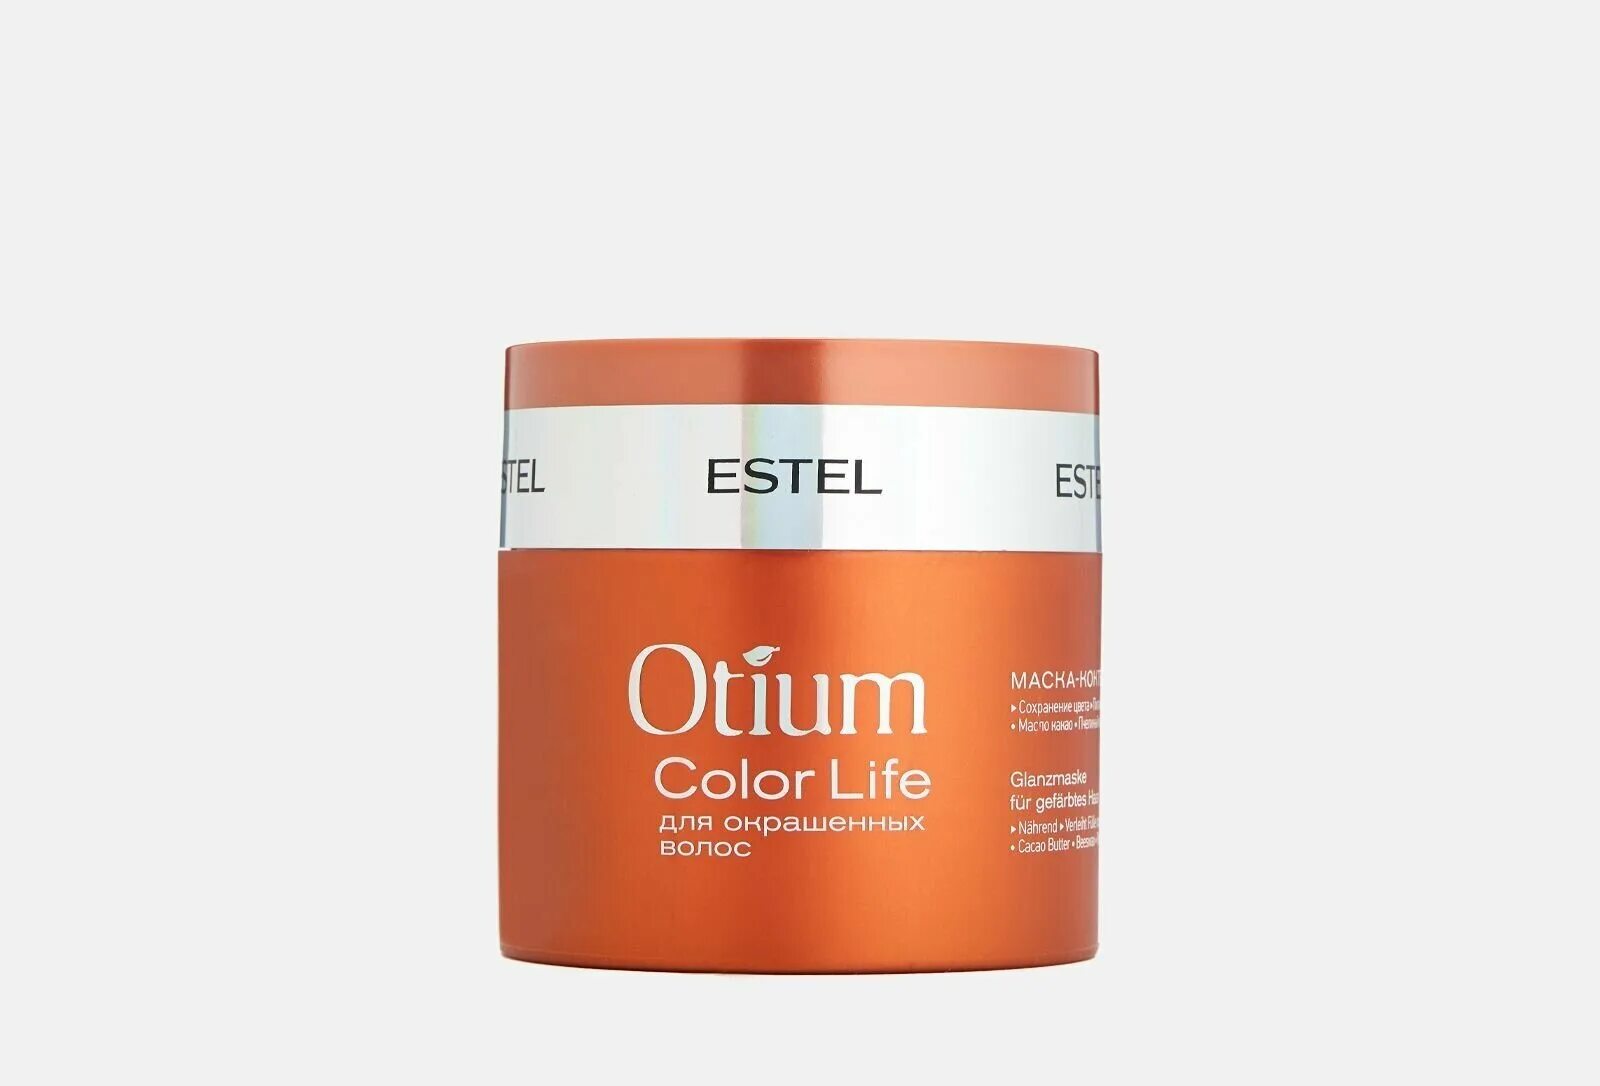 Маски эстель цена. Маска для волос Эстель Otium Miracle Revive. Estel Otium Color Life маска. Маска Эстель отиум Миракл. Estel/ маска-коктейль для окрашенных волос Otium Color Life (300 мл).